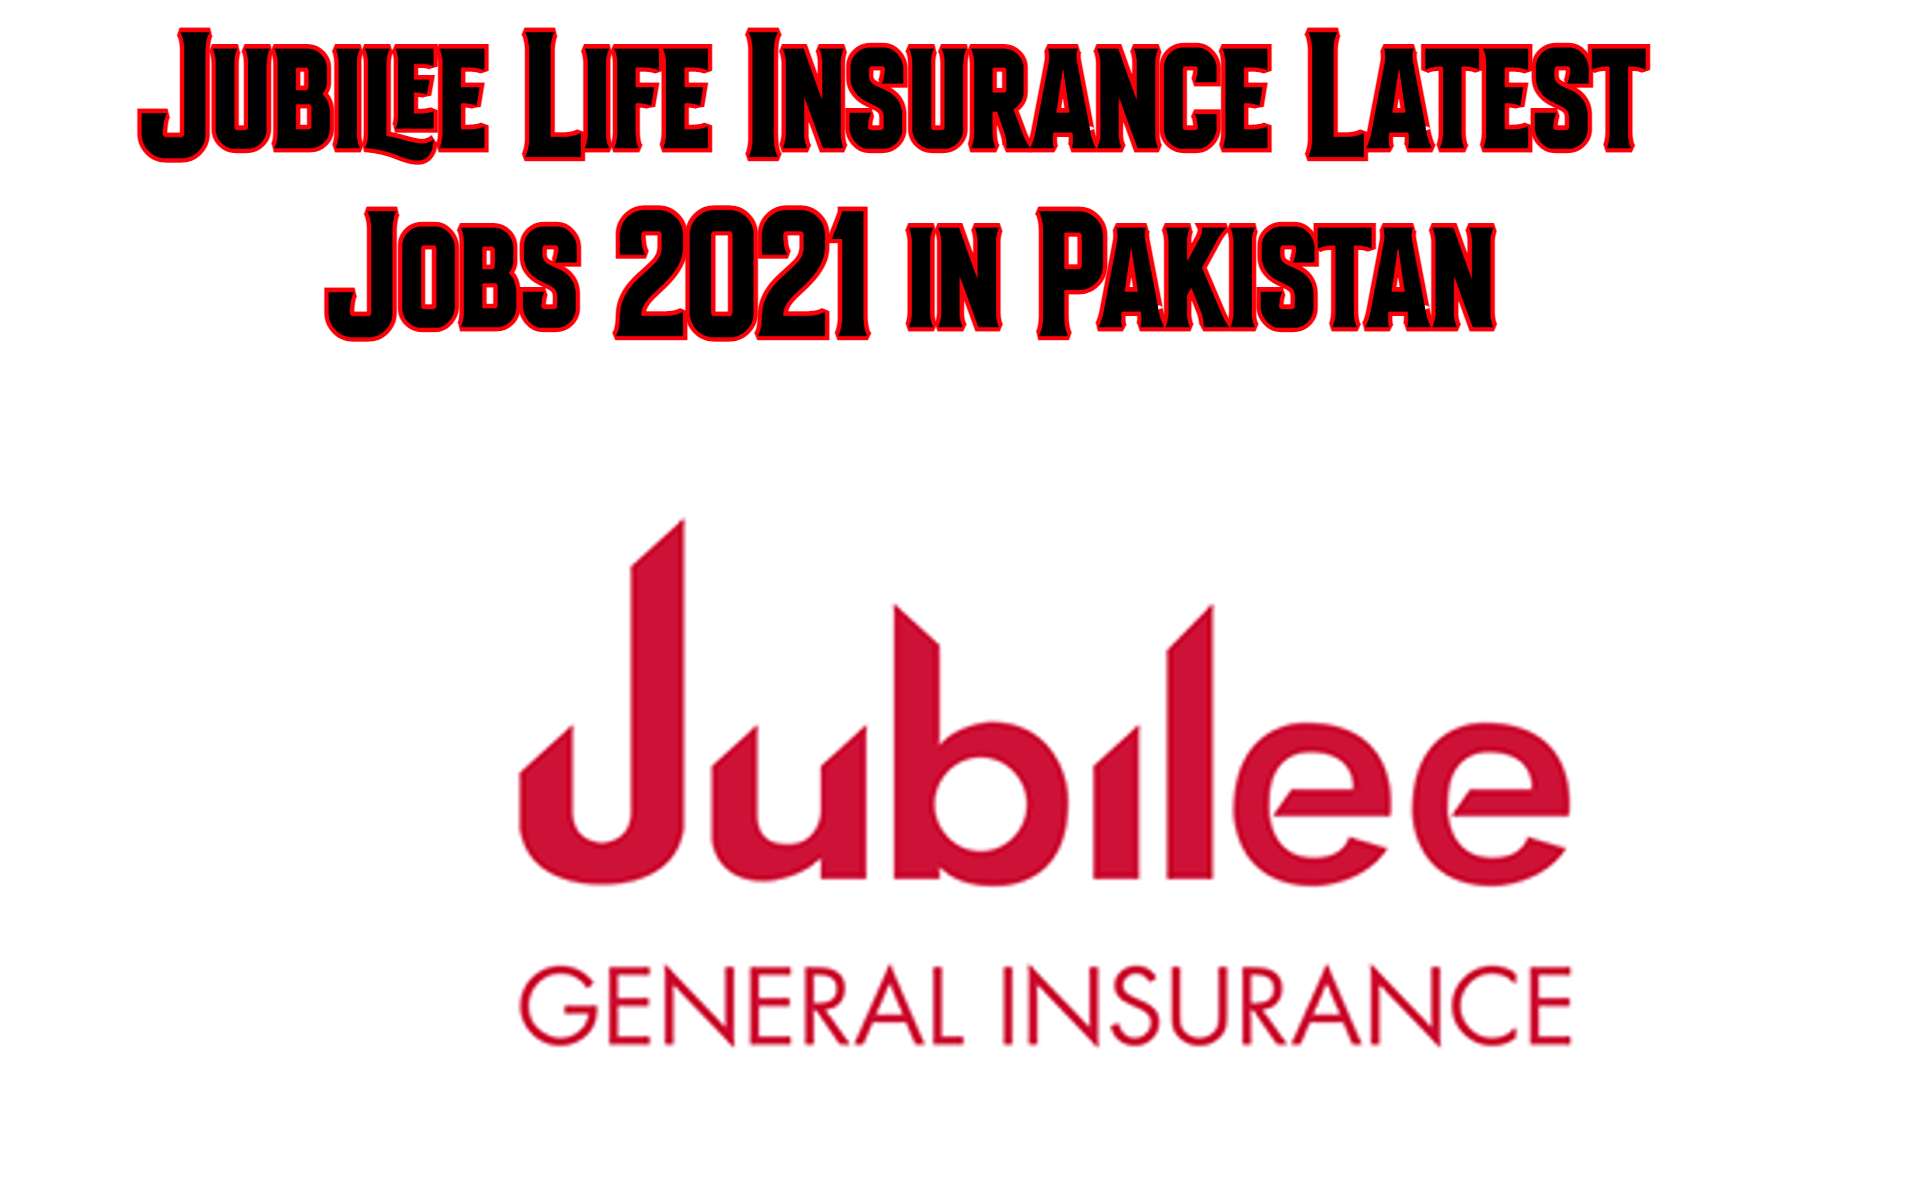 Jubilee Life Insurance Latest Jobs 2021 in Pakistan